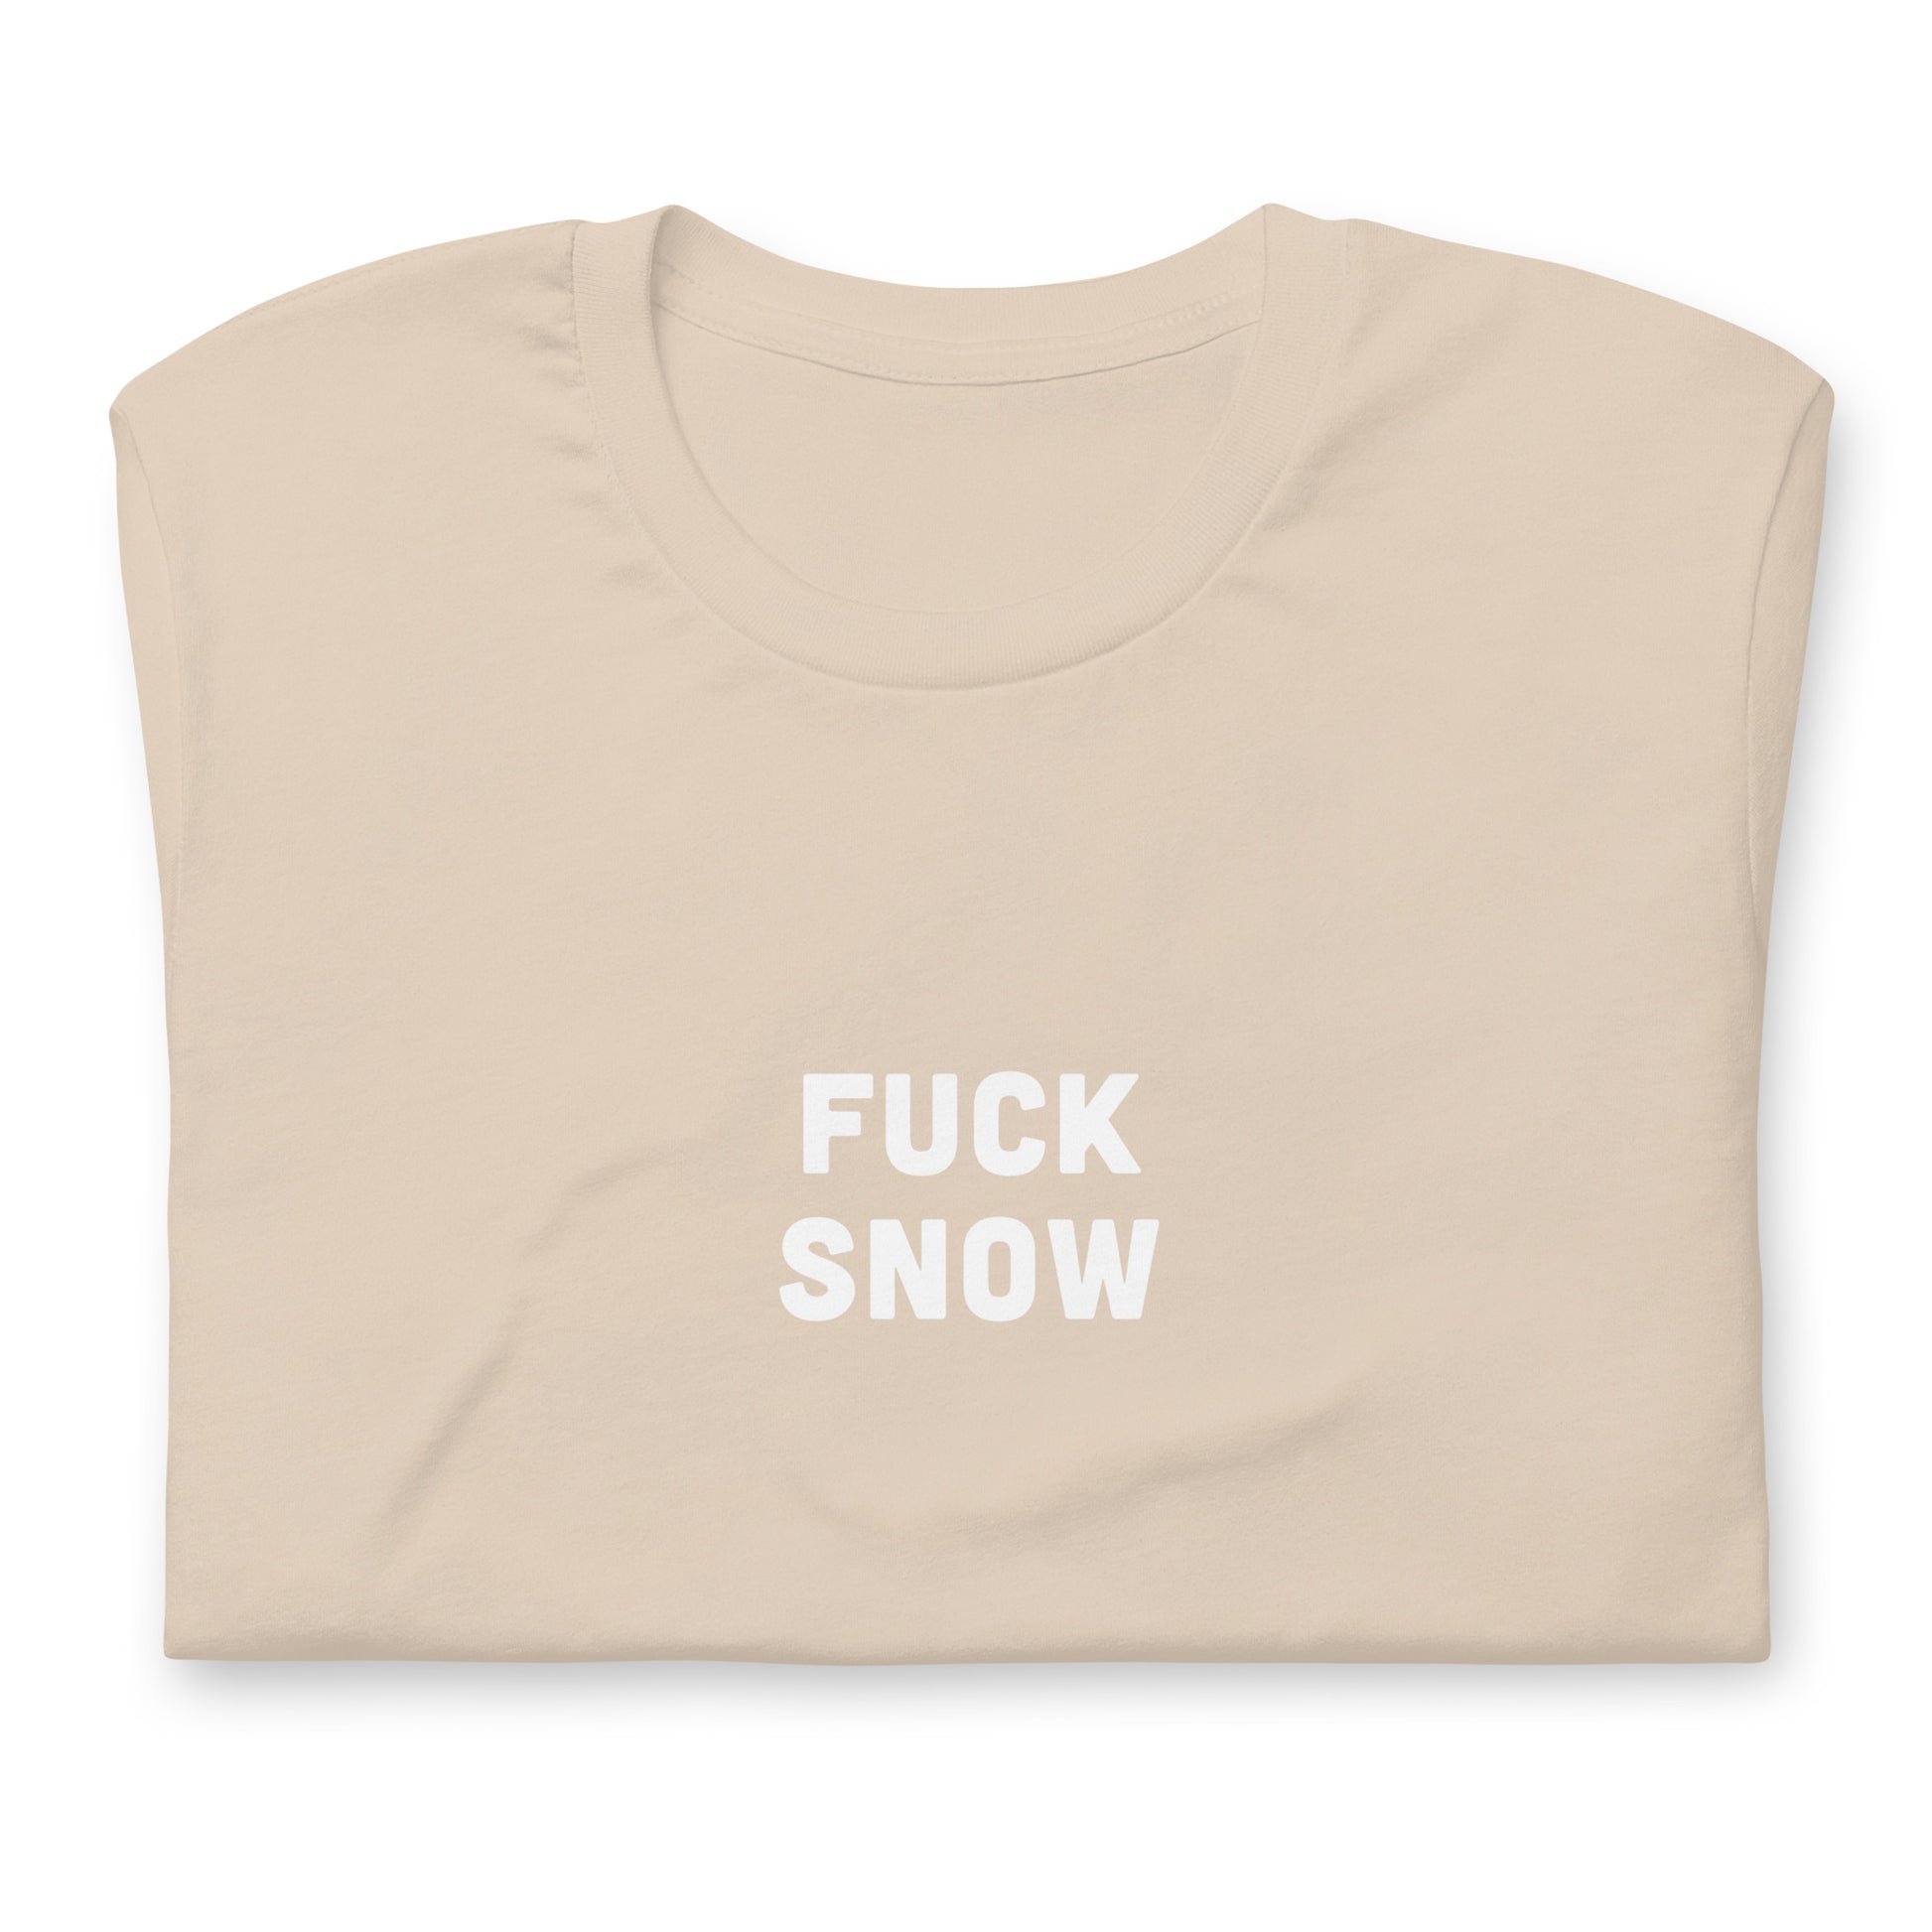 Fuck Snow T-Shirt Size XL Color Asphalt